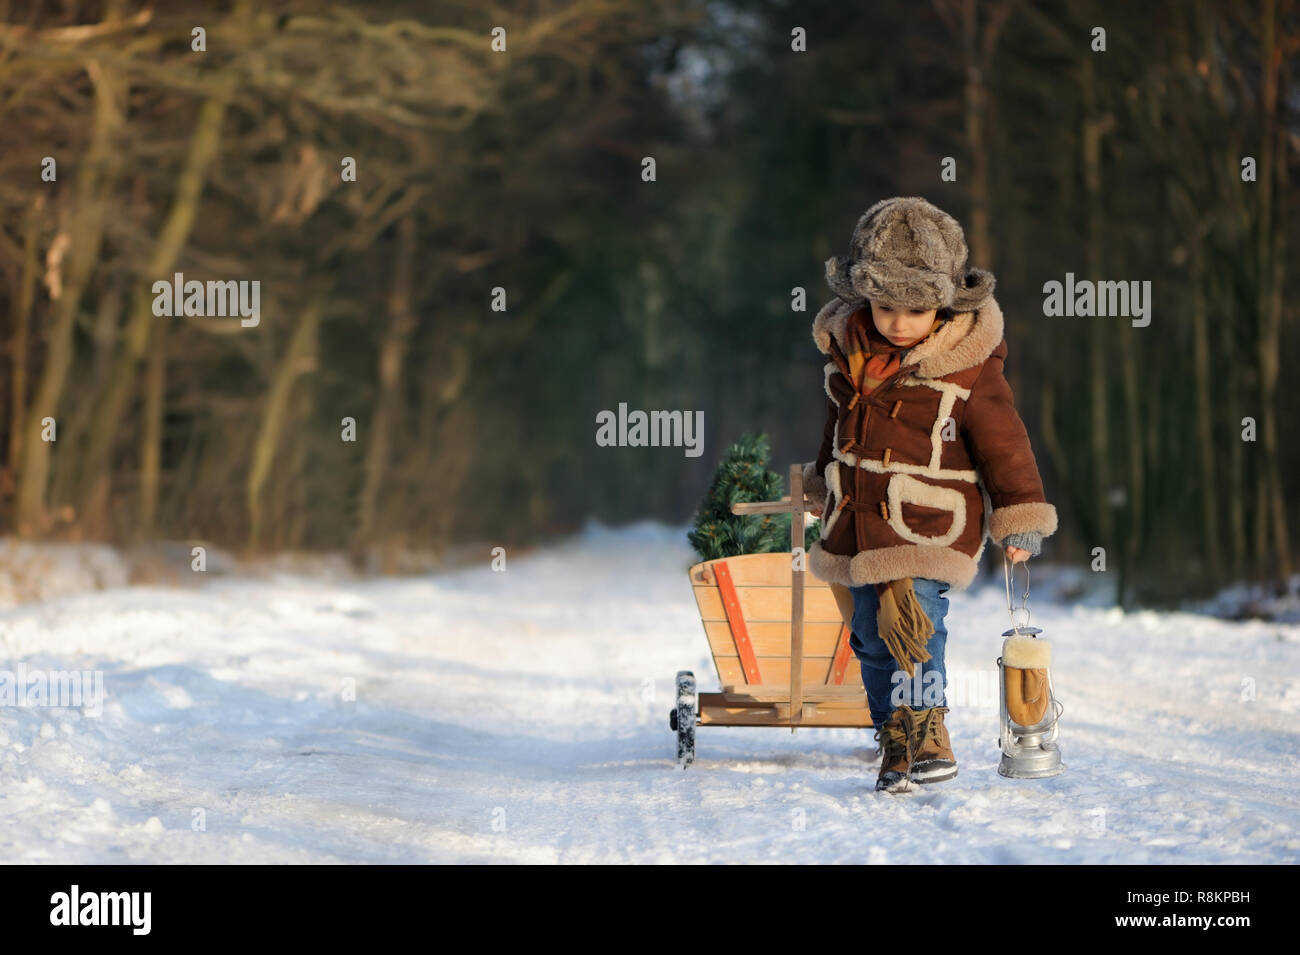 Junge mit einem Weihnachtsbaum im Wald. Winter Portrait of a Boy im Freien in einem braunen Schaffellmantel und Fell hat, in einer verschneiten Landschaft. Schön, kalt Stockfoto